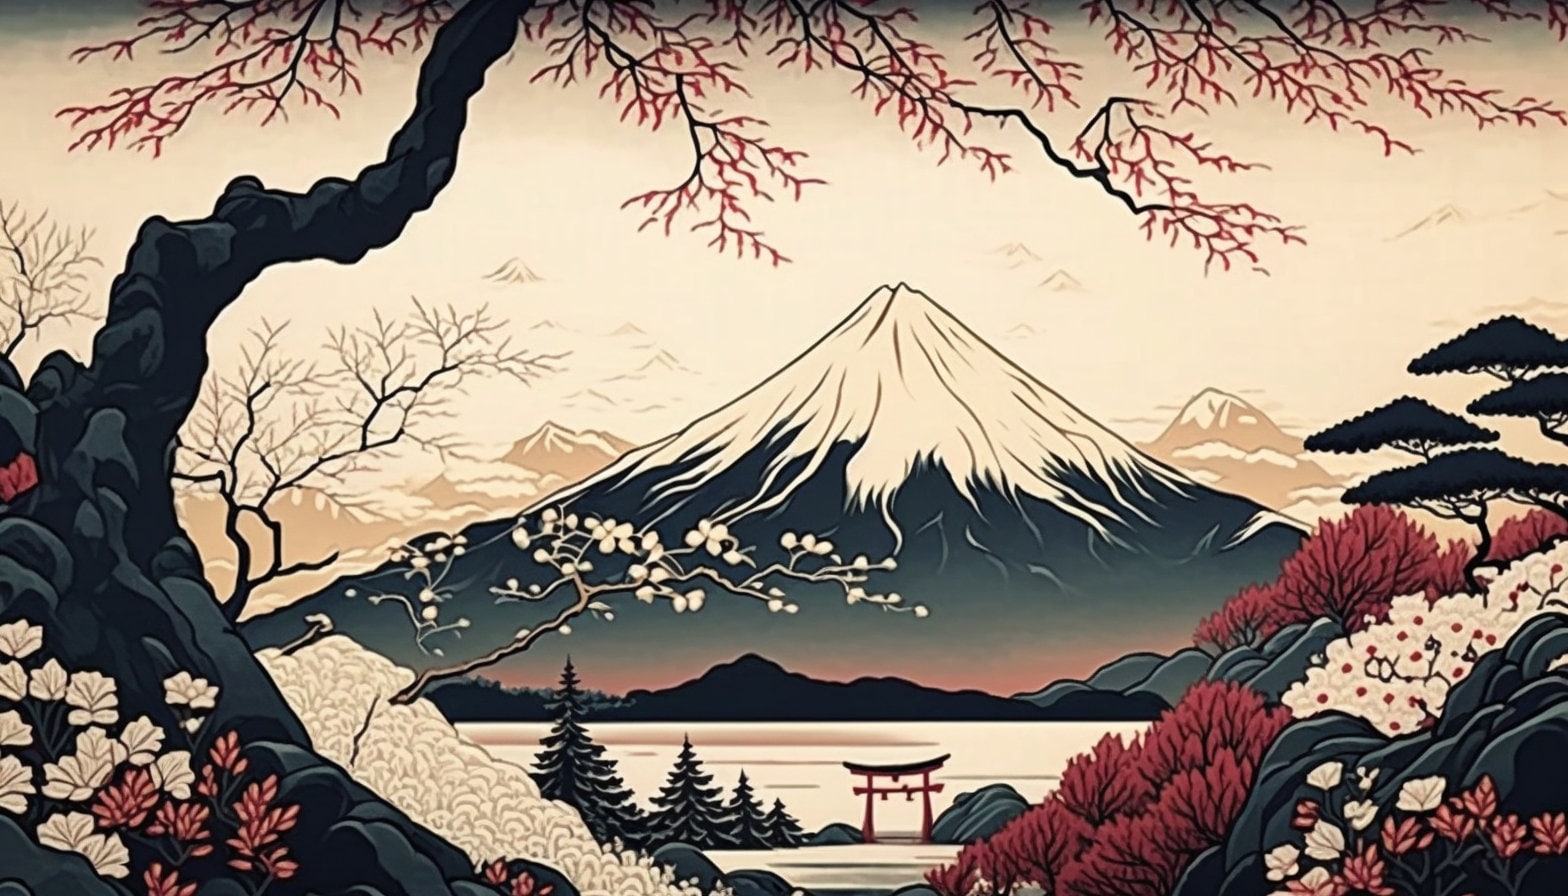 Japan Landscape Wallpaper Image, Japan Landscape Desktop Wallpaper, Japan Landscape Digital Art, Japan Landscape Printable, 4k Resolution